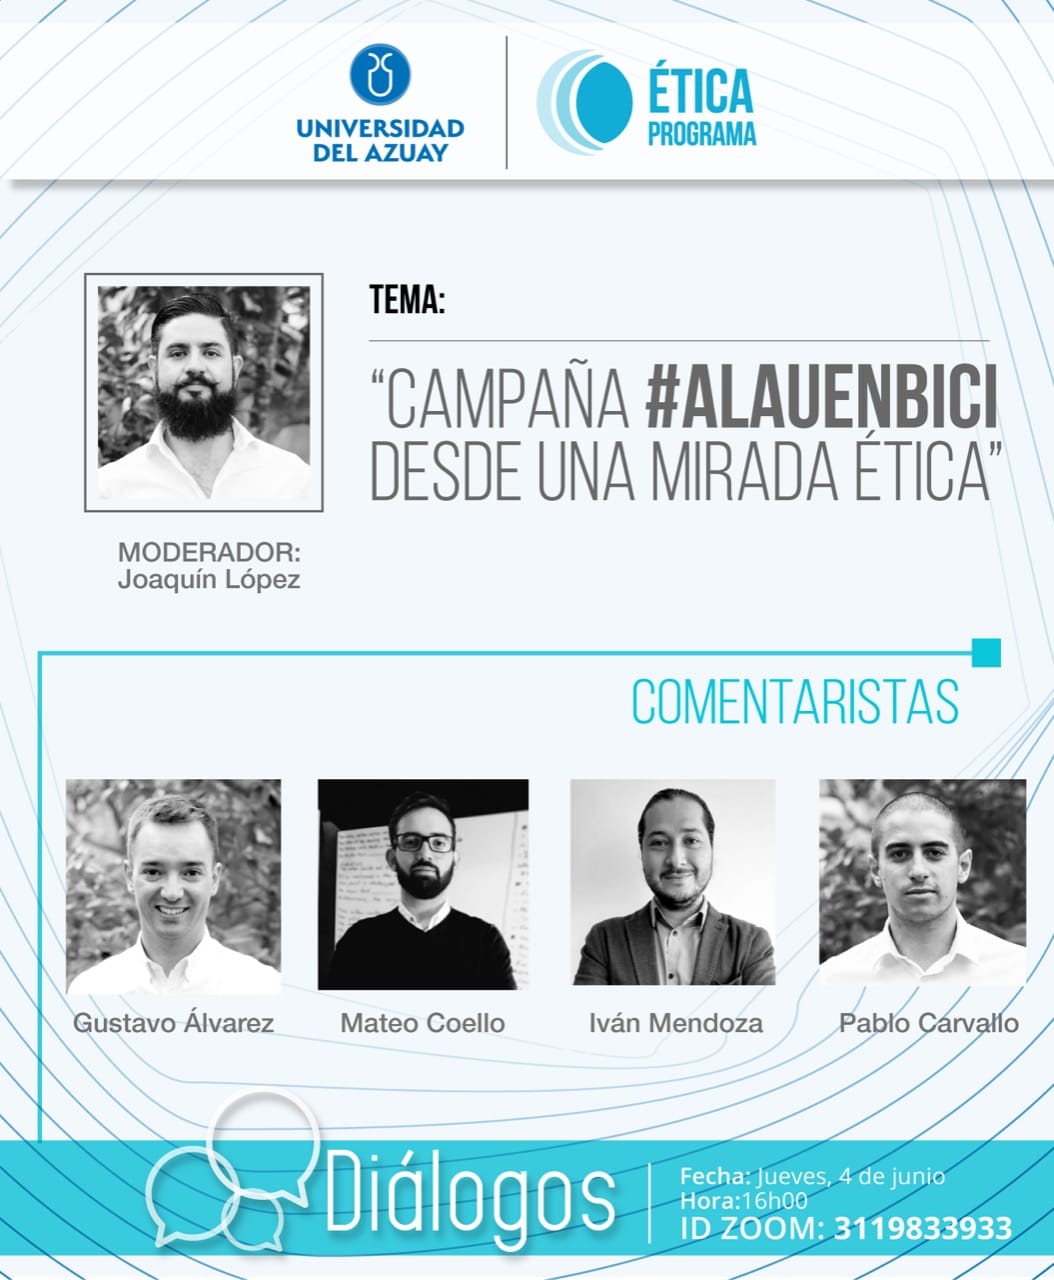 “Campaña #alauenbici desde una mirada ética”